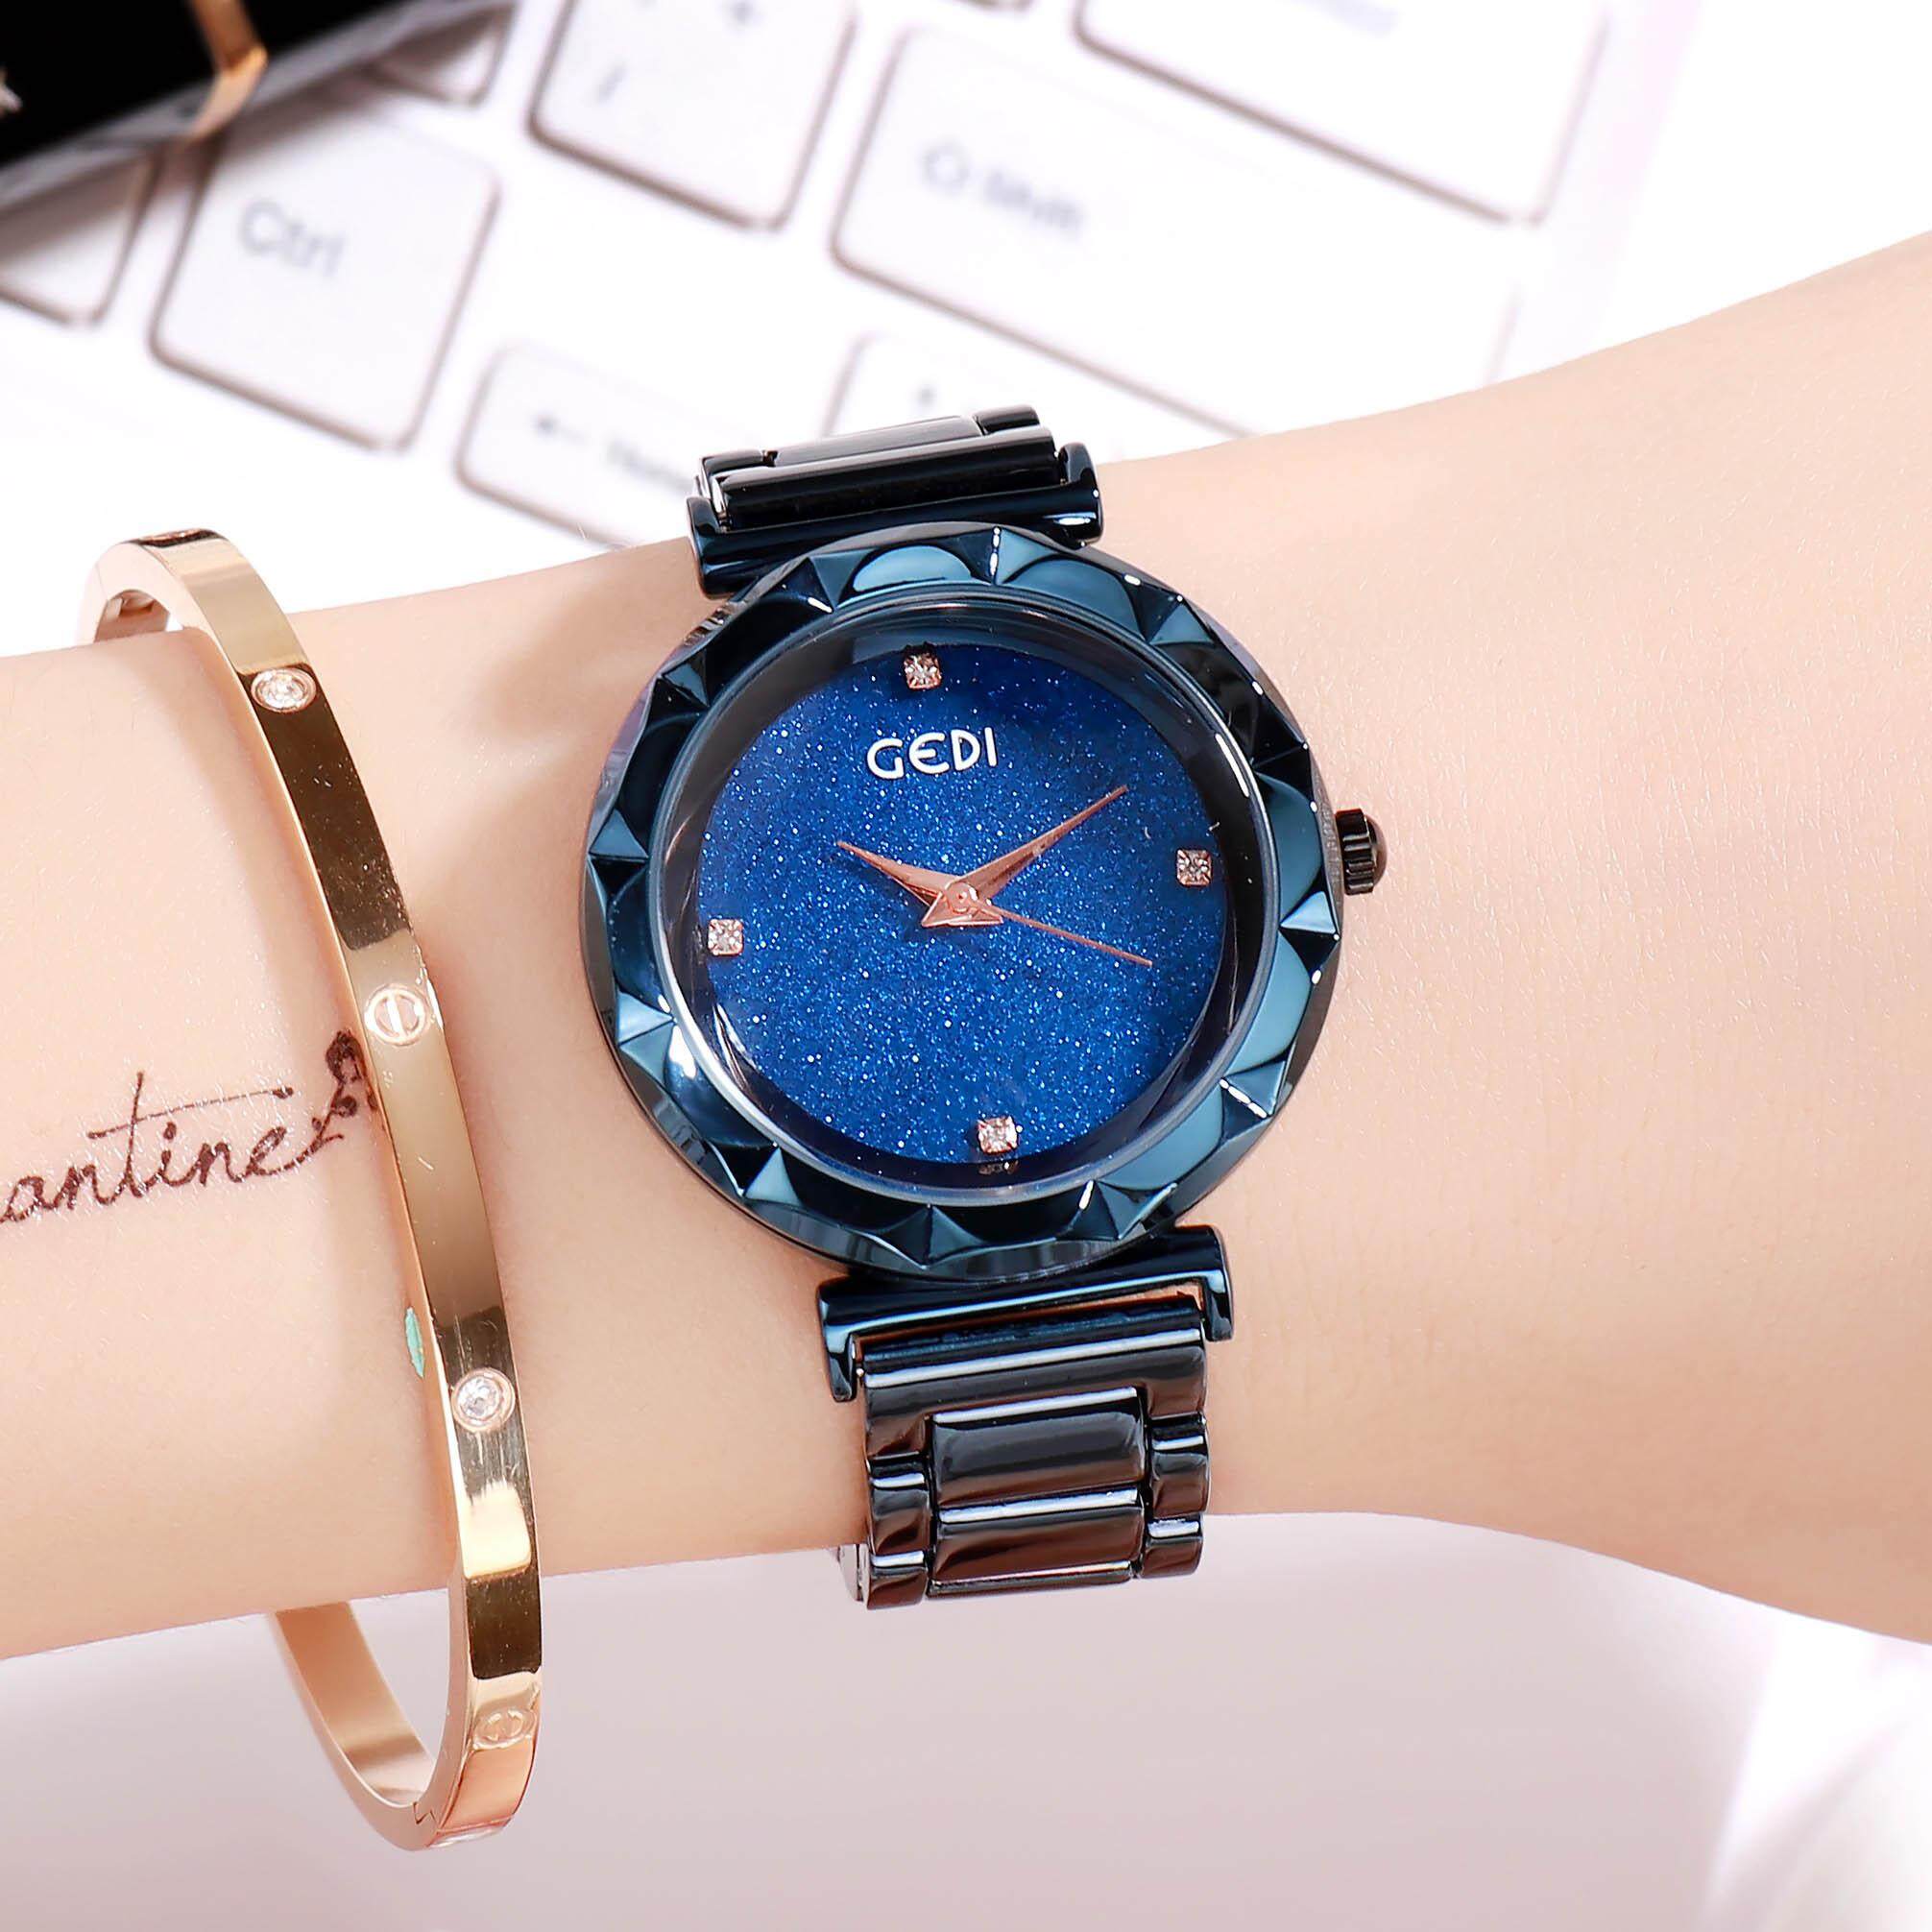 นาฬิกาข้อมือ GEDI รุ่น 81017 Women Fashion watches ของแท้ แถมกล่อง นาฬิกาแฟชั่น พร้อมส่ง (มีการชำระเงินเก็บเงินปลายทาง) Casual Bussiness Watch